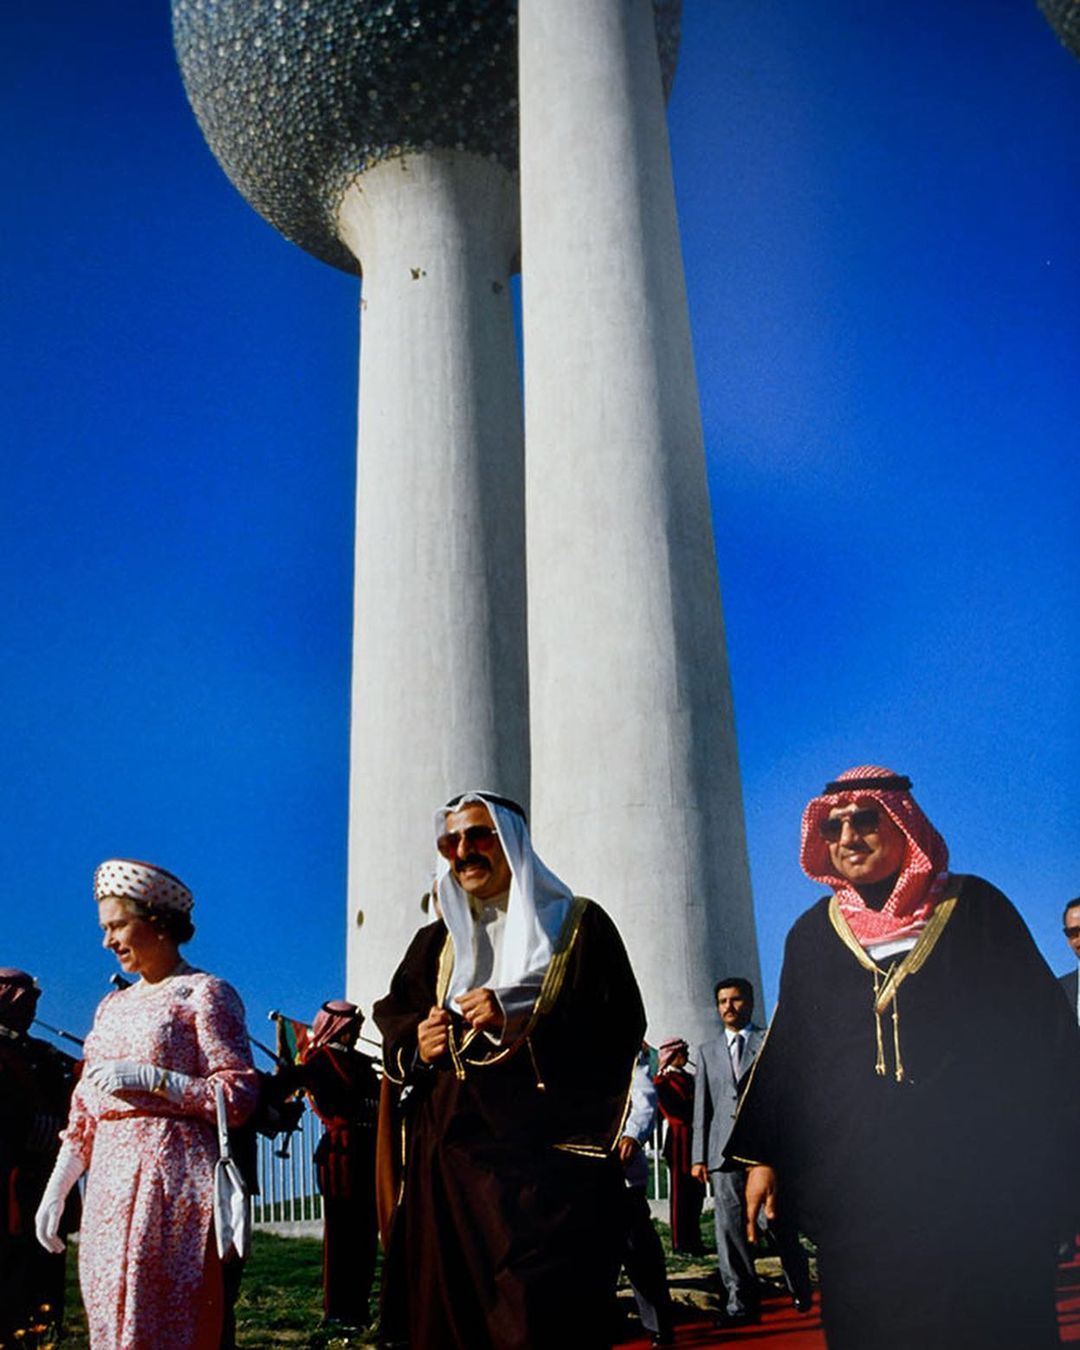 صور تاريخية للملكة ايليزابيث الثانية في أول زيارة لها لدولة الكويت عام 1979